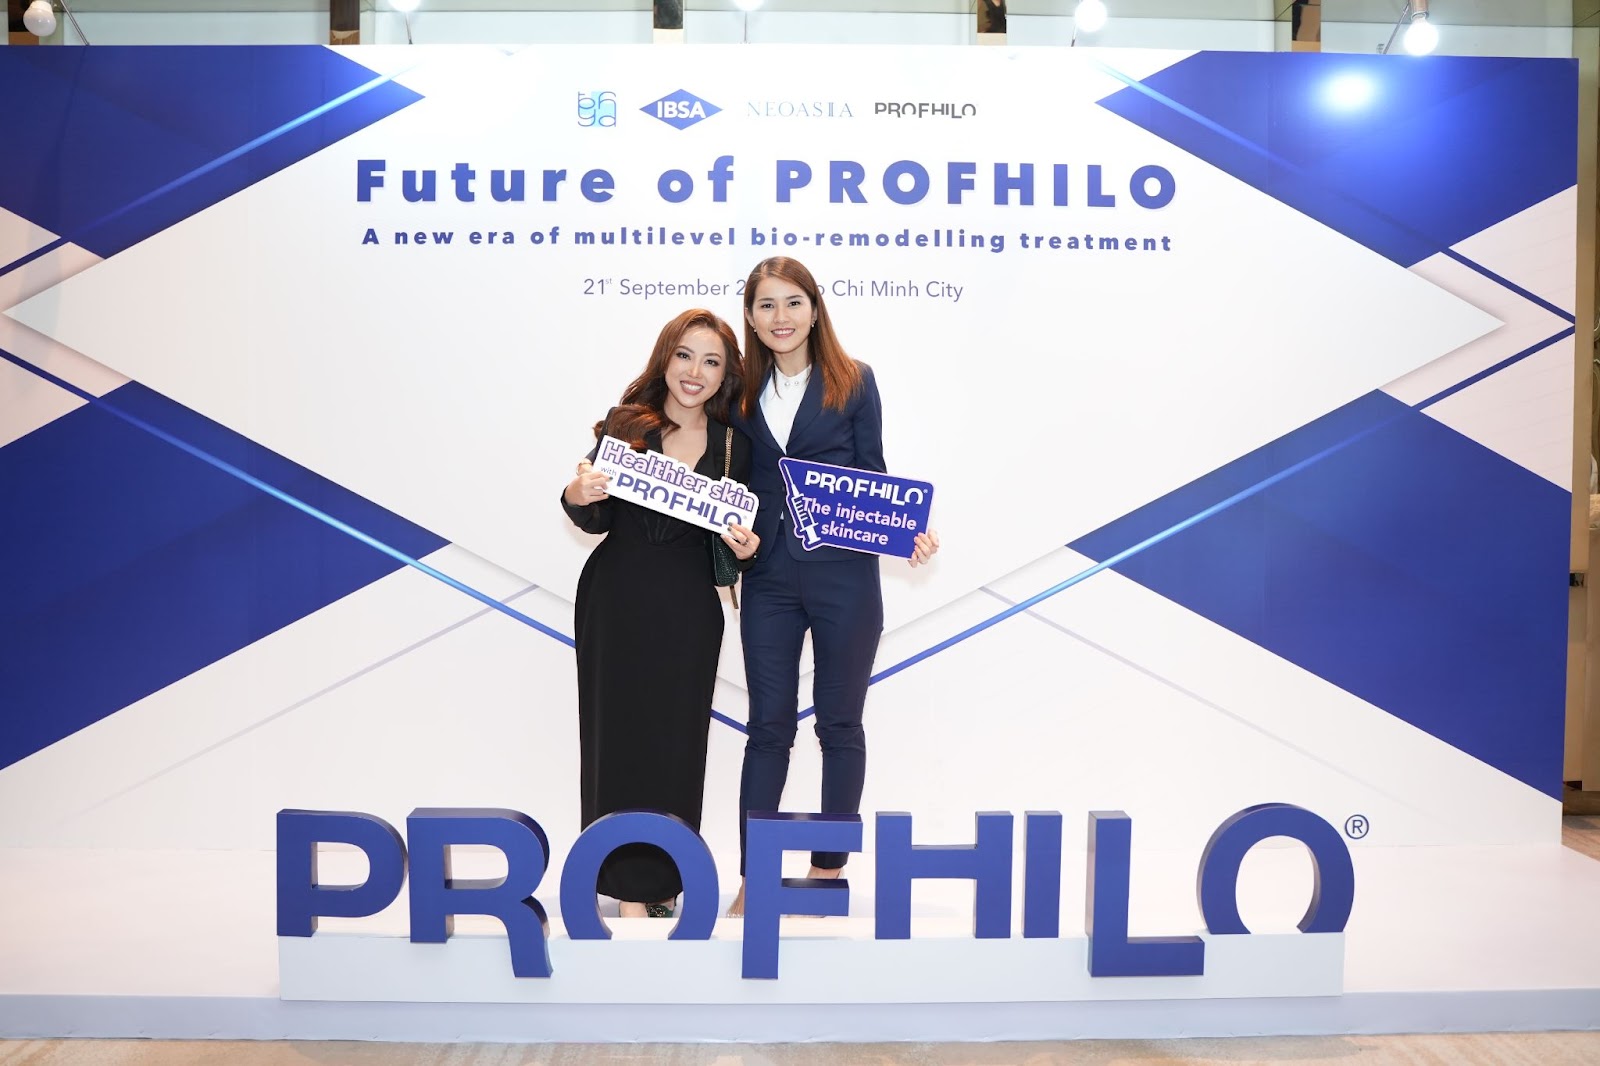 Shynh Premium tiếp tục nhận giải thưởng toàn cầu về liệu pháp dưỡng da sinh học Profhilo từ NeoAsia  - 2